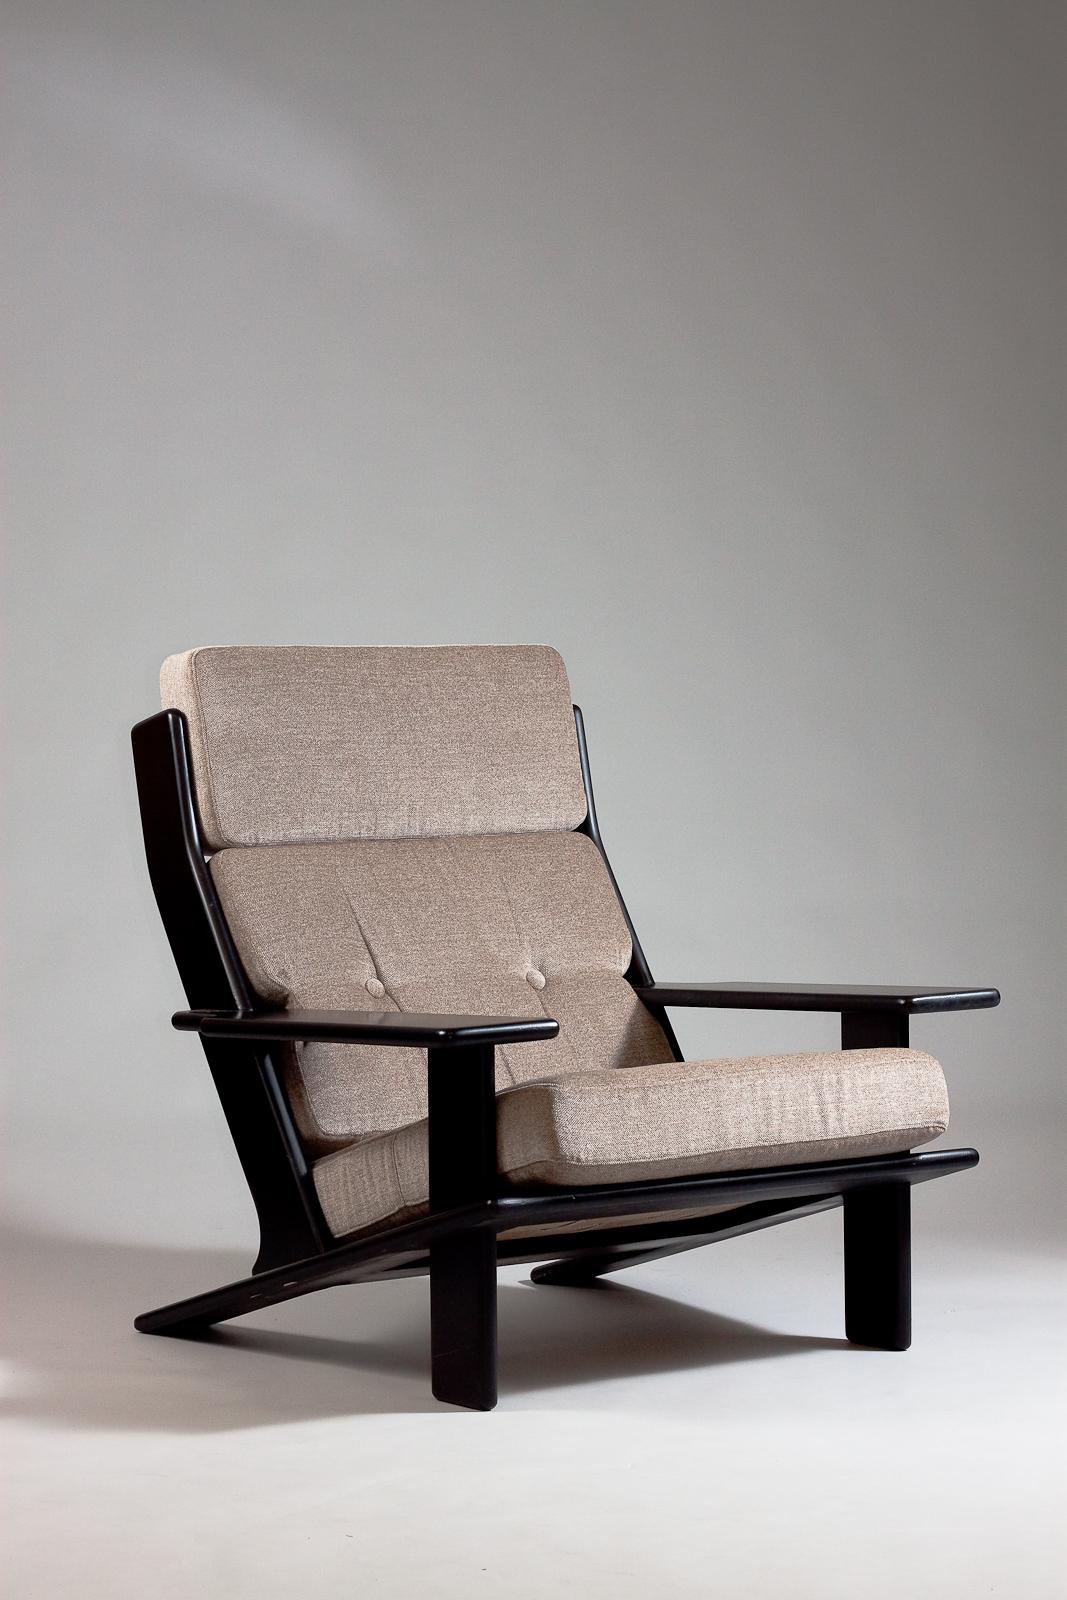 Voici la chaise longue Esko Pajamies Pele, une pièce emblématique du design des années 1970 pour la collection Lepokalustokalusto. Cette chaise longue élégante et confortable présente un design épuré et minimaliste. Le complément idéal à tout espace